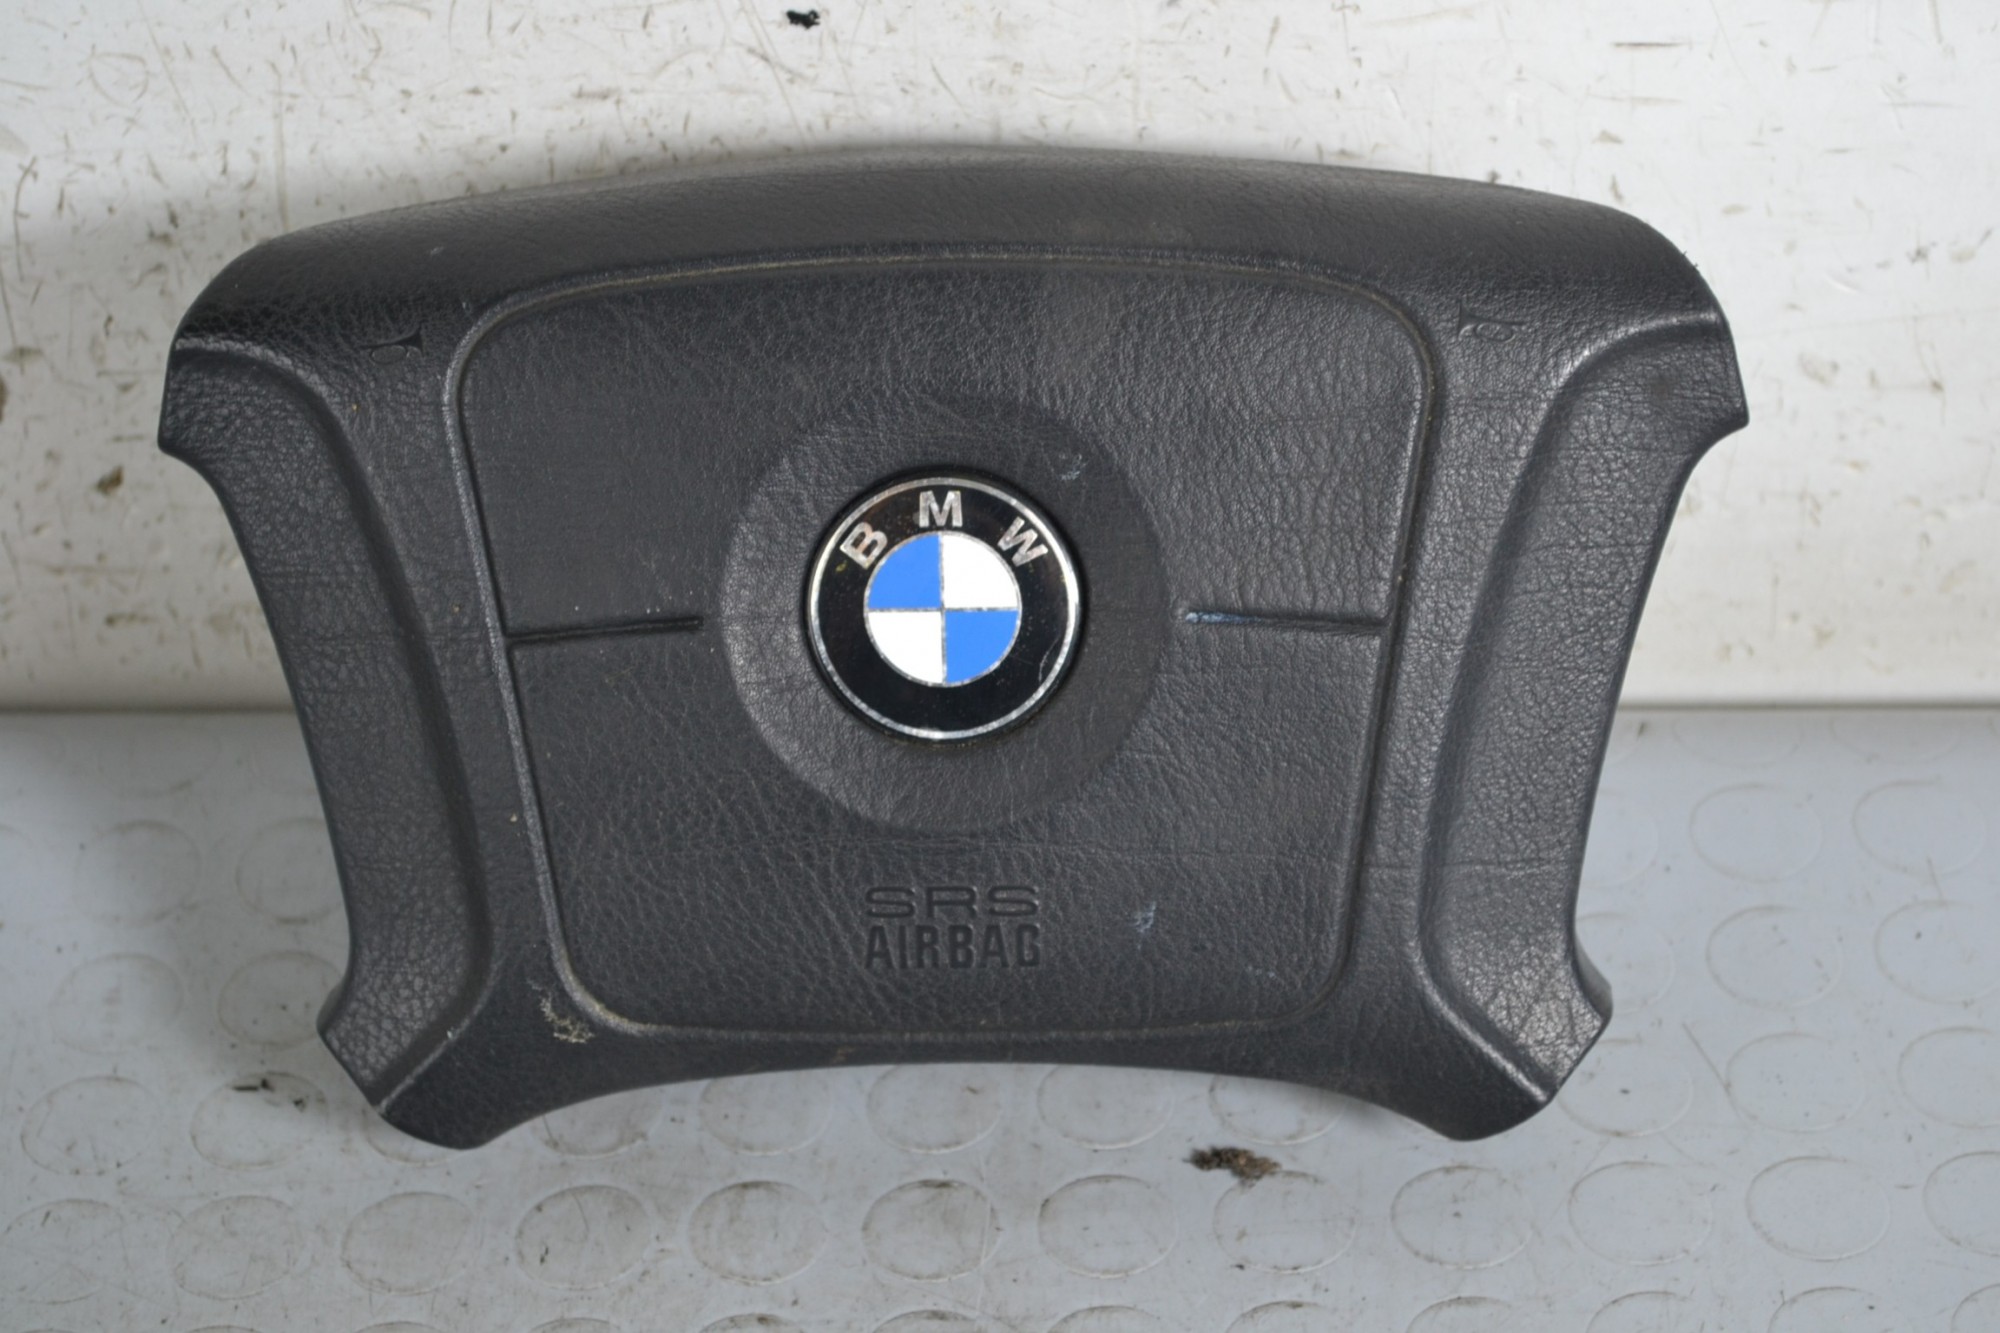 Airbag Volante BMW Serie 3 E36 dal 1990 al 2000 Cod 3310933051  1656927590651